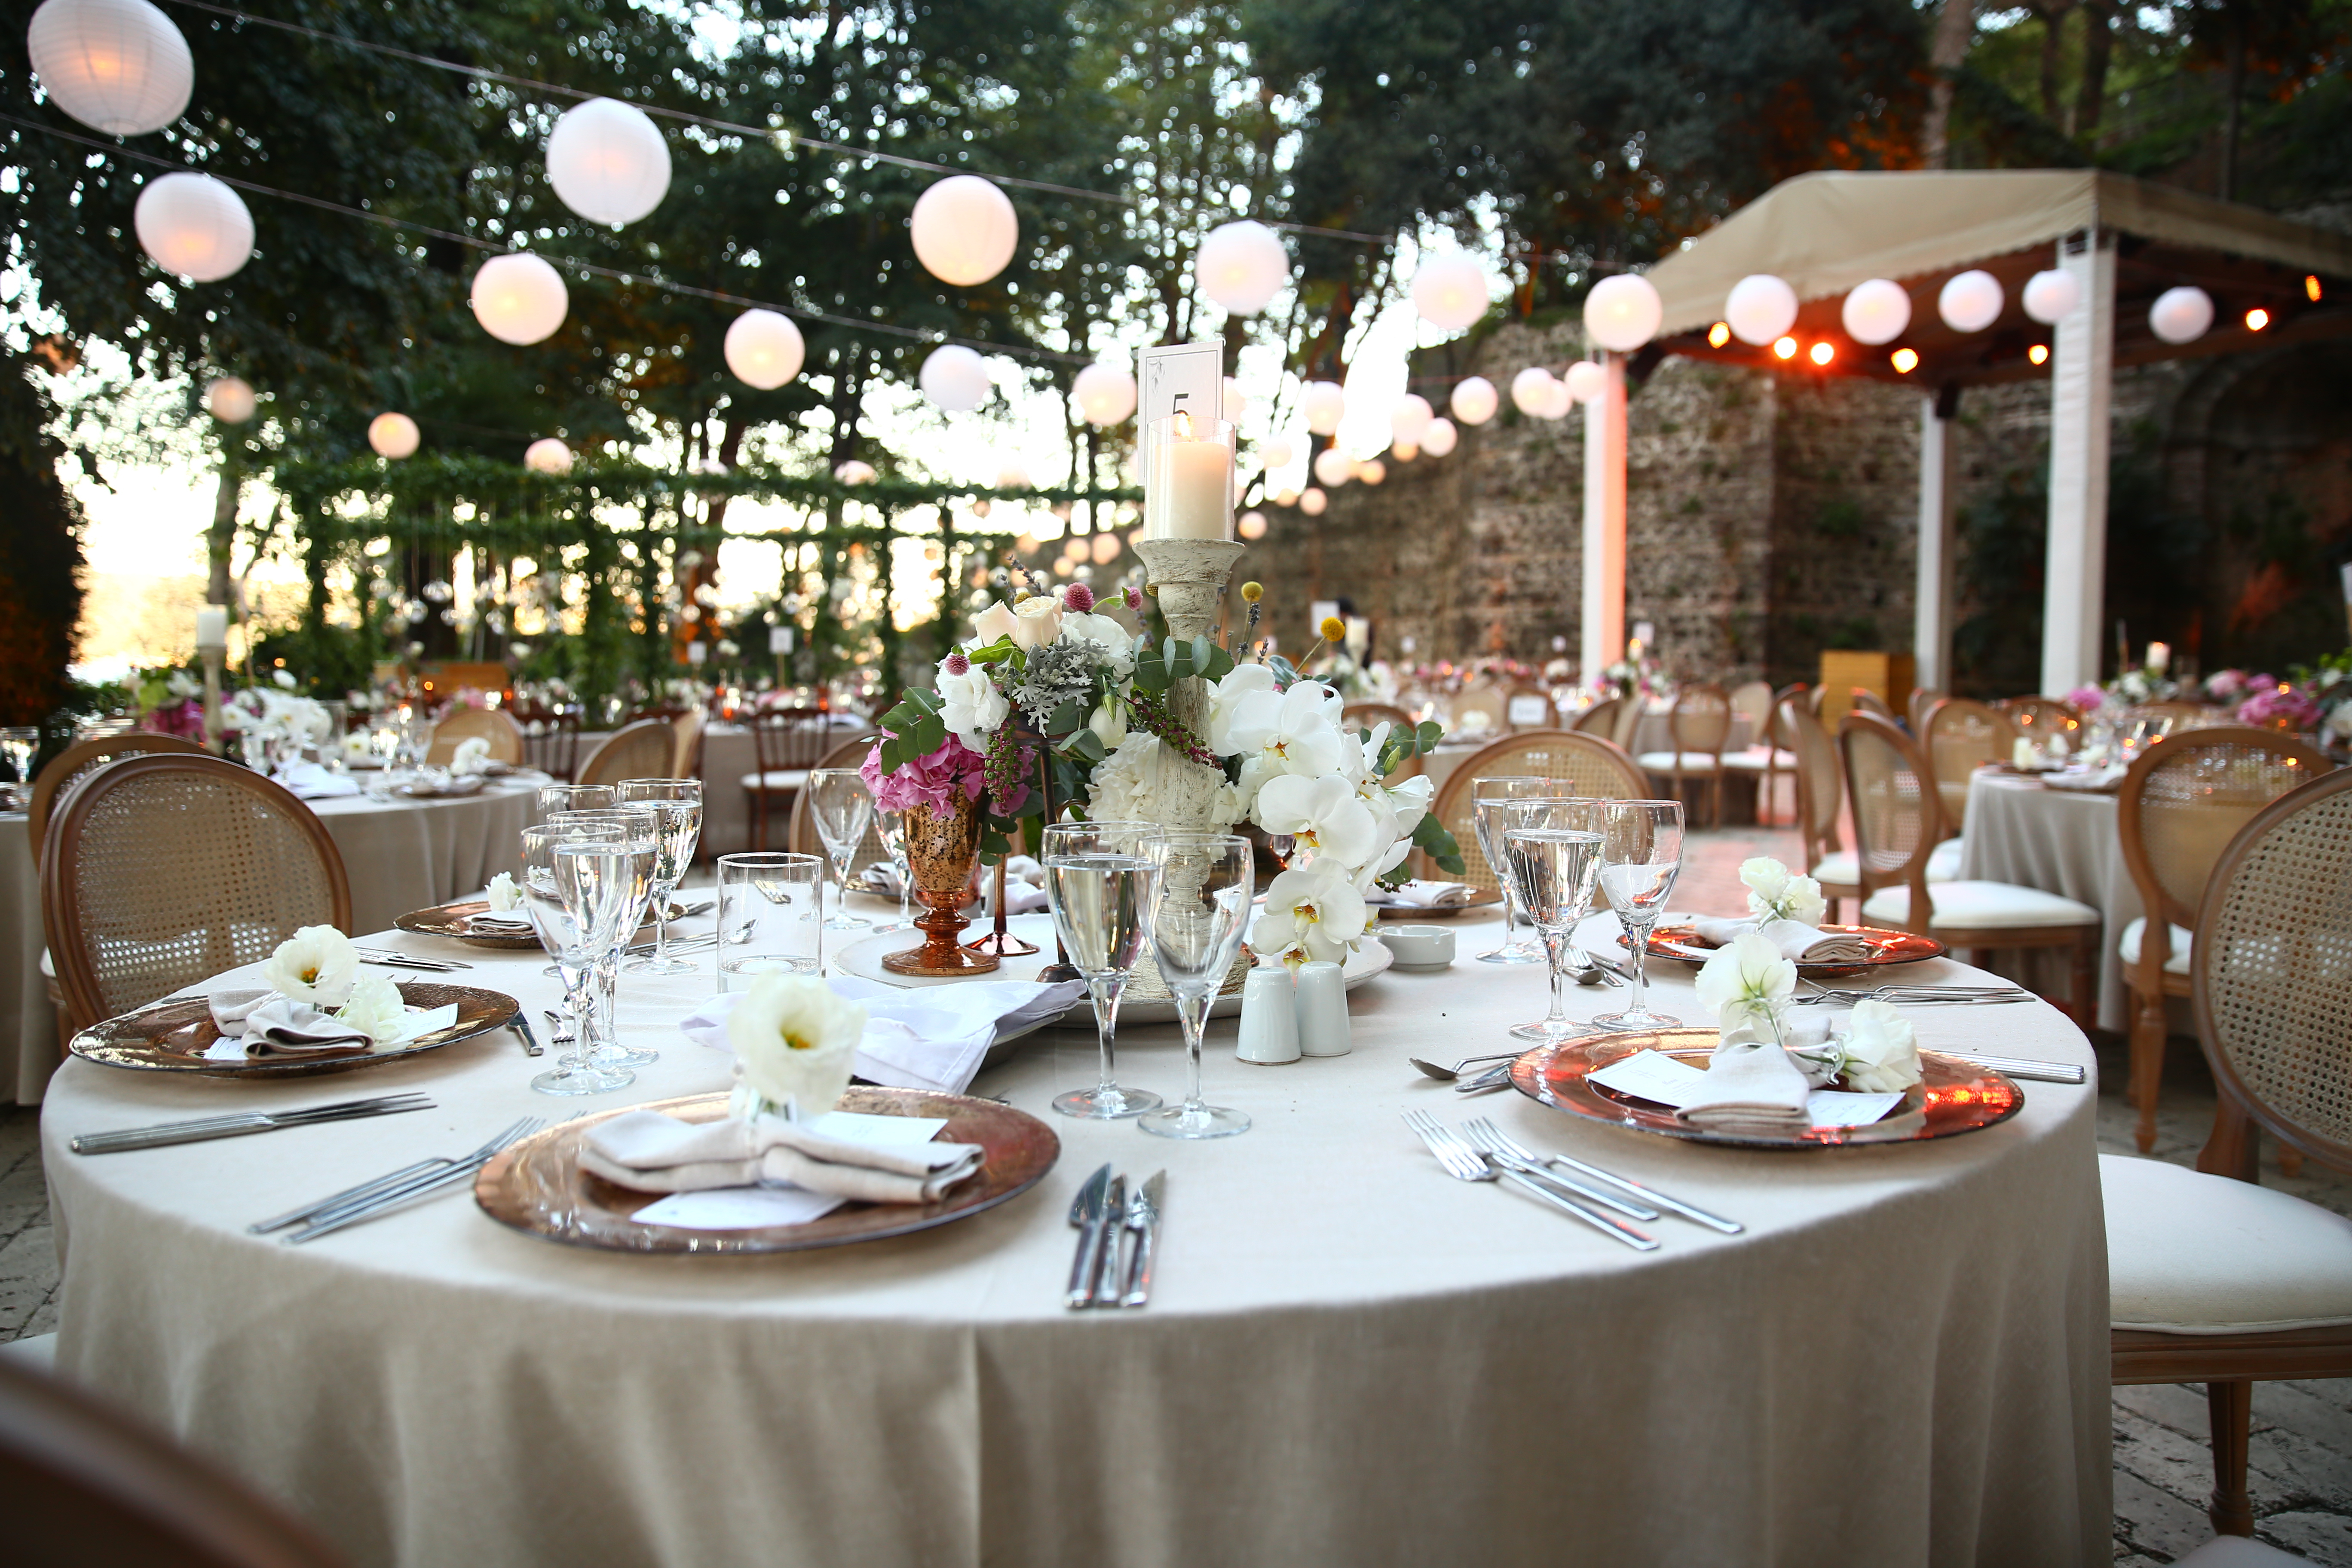 Une table en bois décorée en blanc pour un mariage | Source : Shutterstock